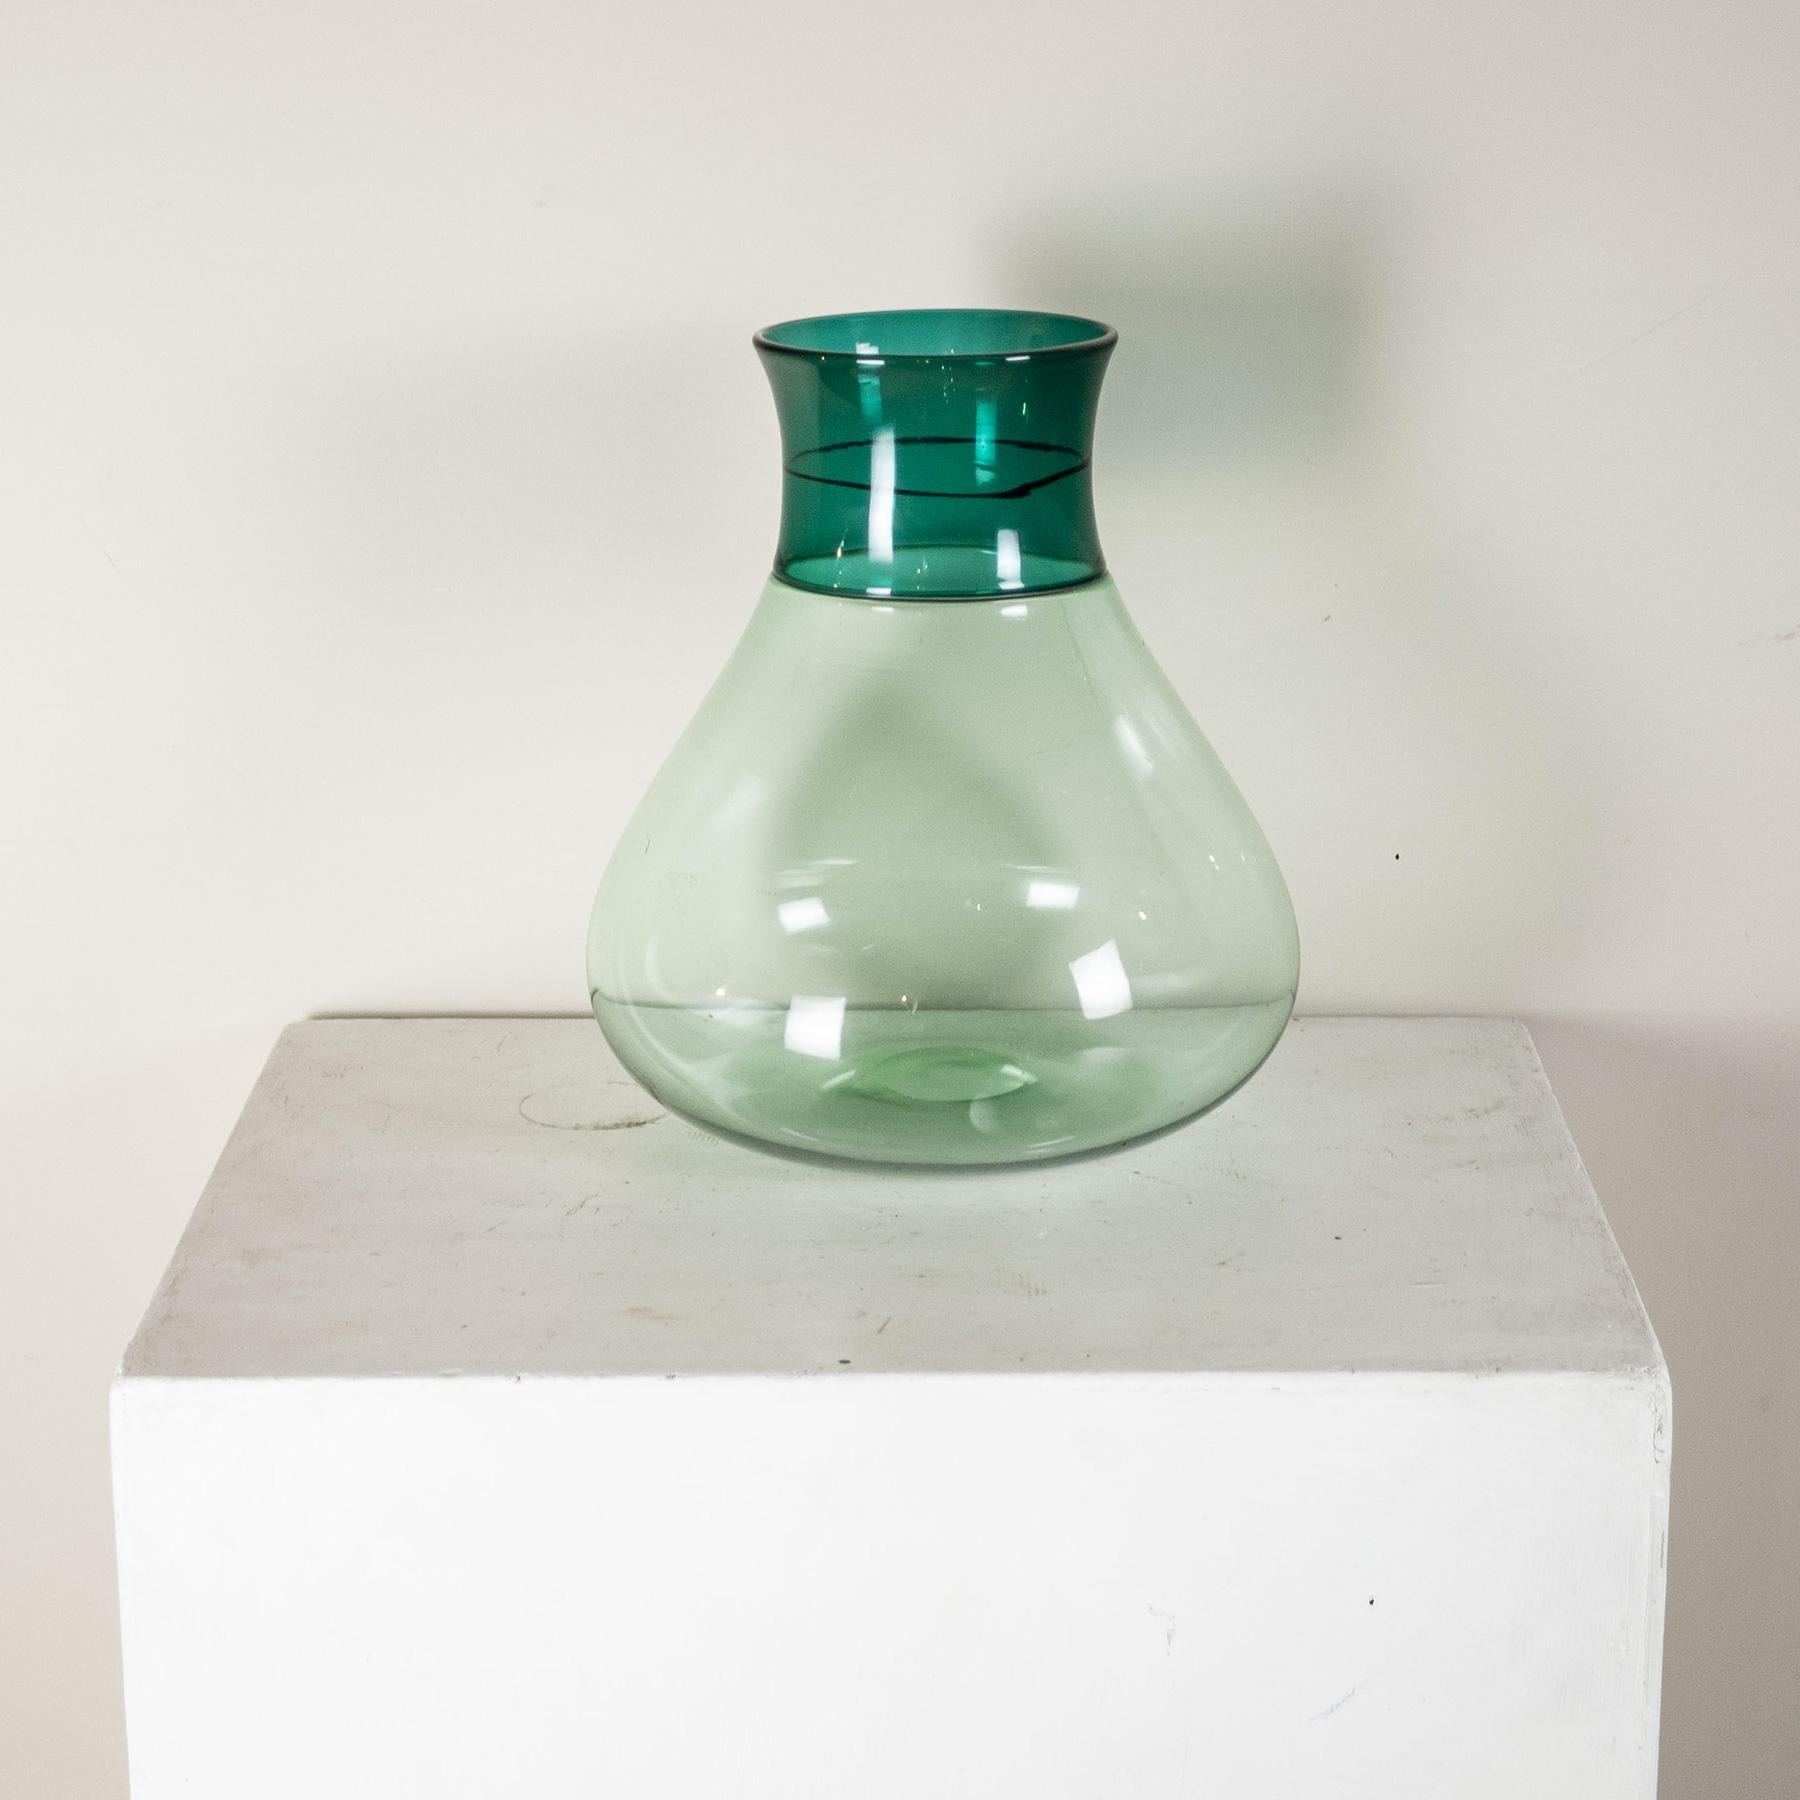 Vase der Serie Colletti aus mundgeblasenem grünlichem Glas mit zweifarbigem Incalmo-Band-Dekor des Designers Alessandro Diaz de Santillana. Venini gravierte Signatur.
Nach seinem Abschluss in Architektur in Venedig widmete er sich sofort der